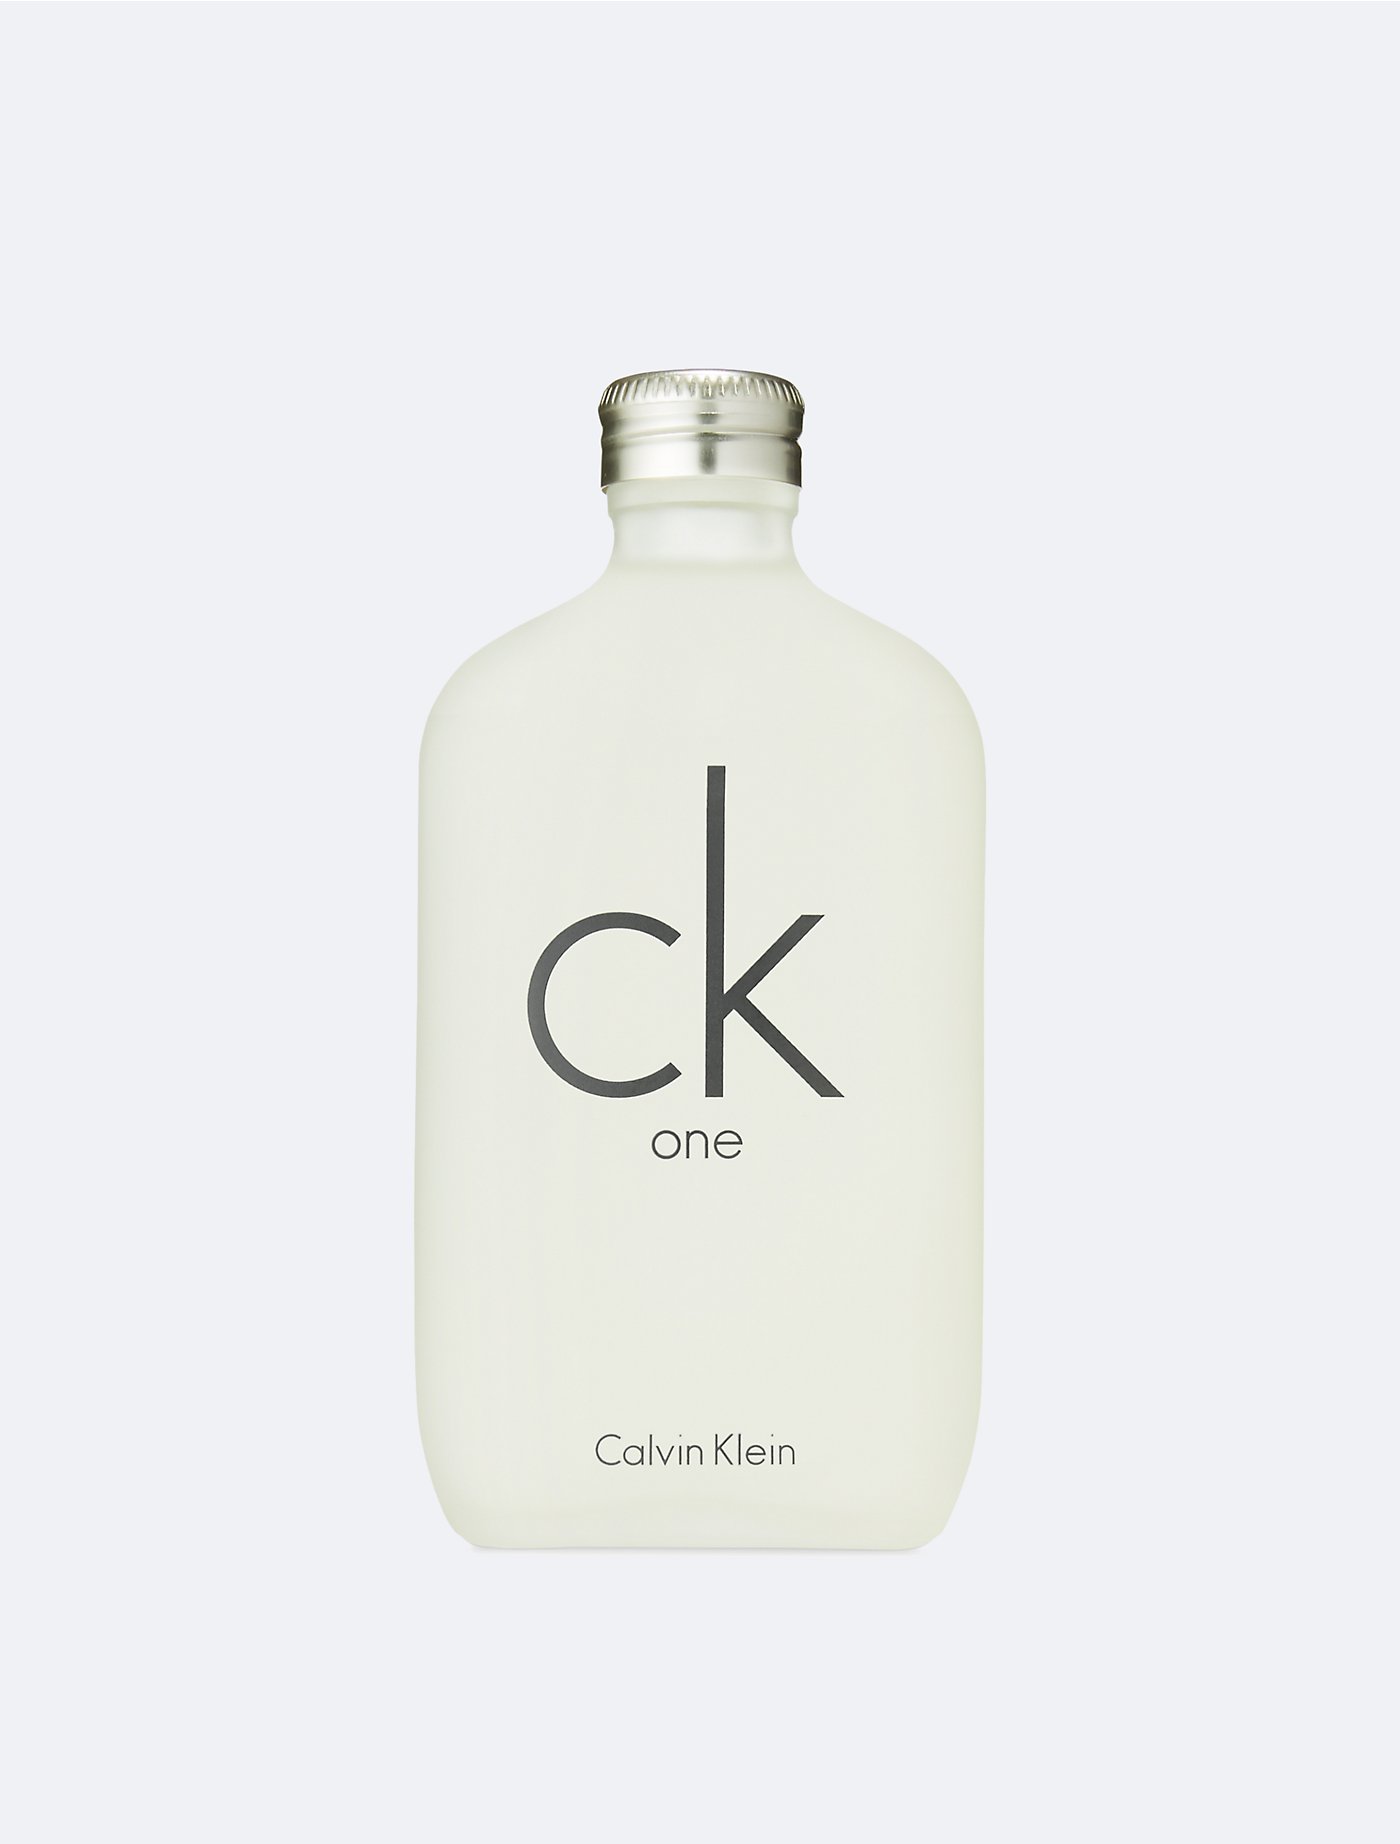 CK ONE Calvin Klein